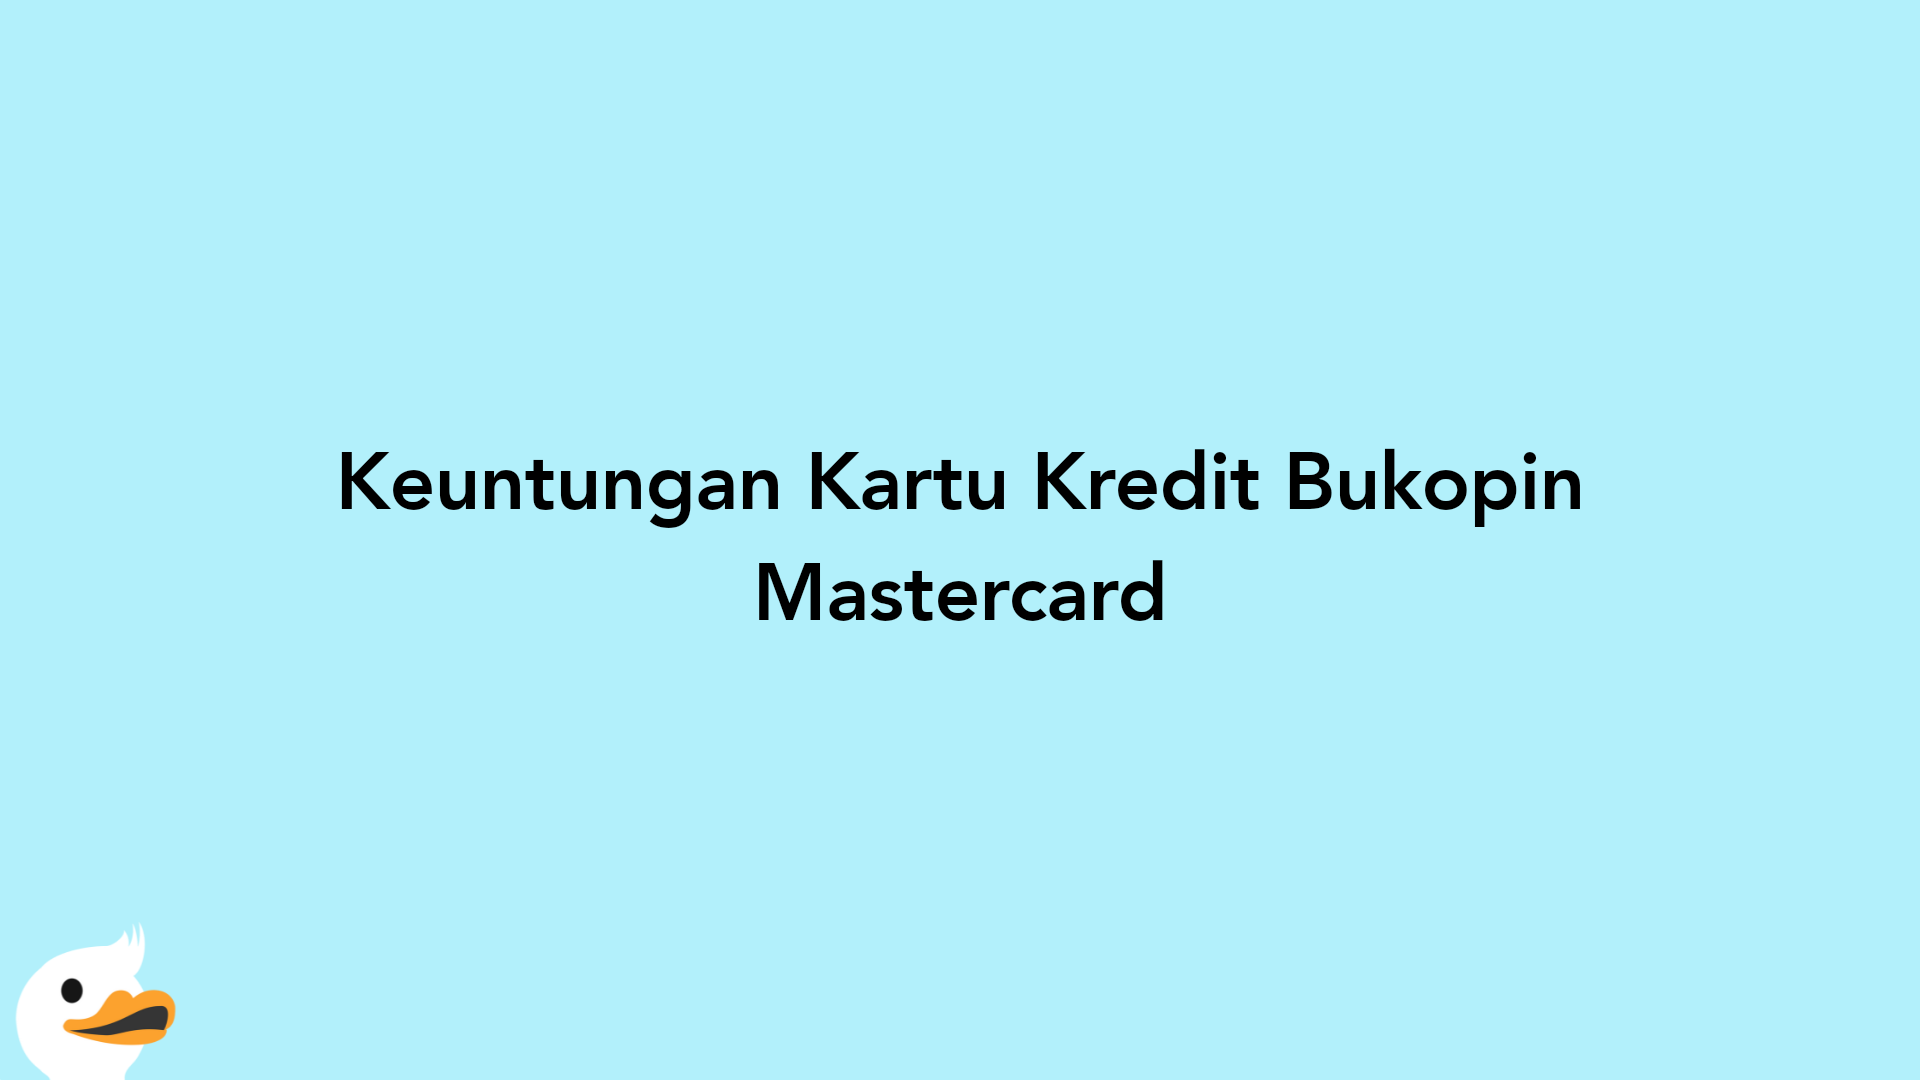 Keuntungan Kartu Kredit Bukopin Mastercard